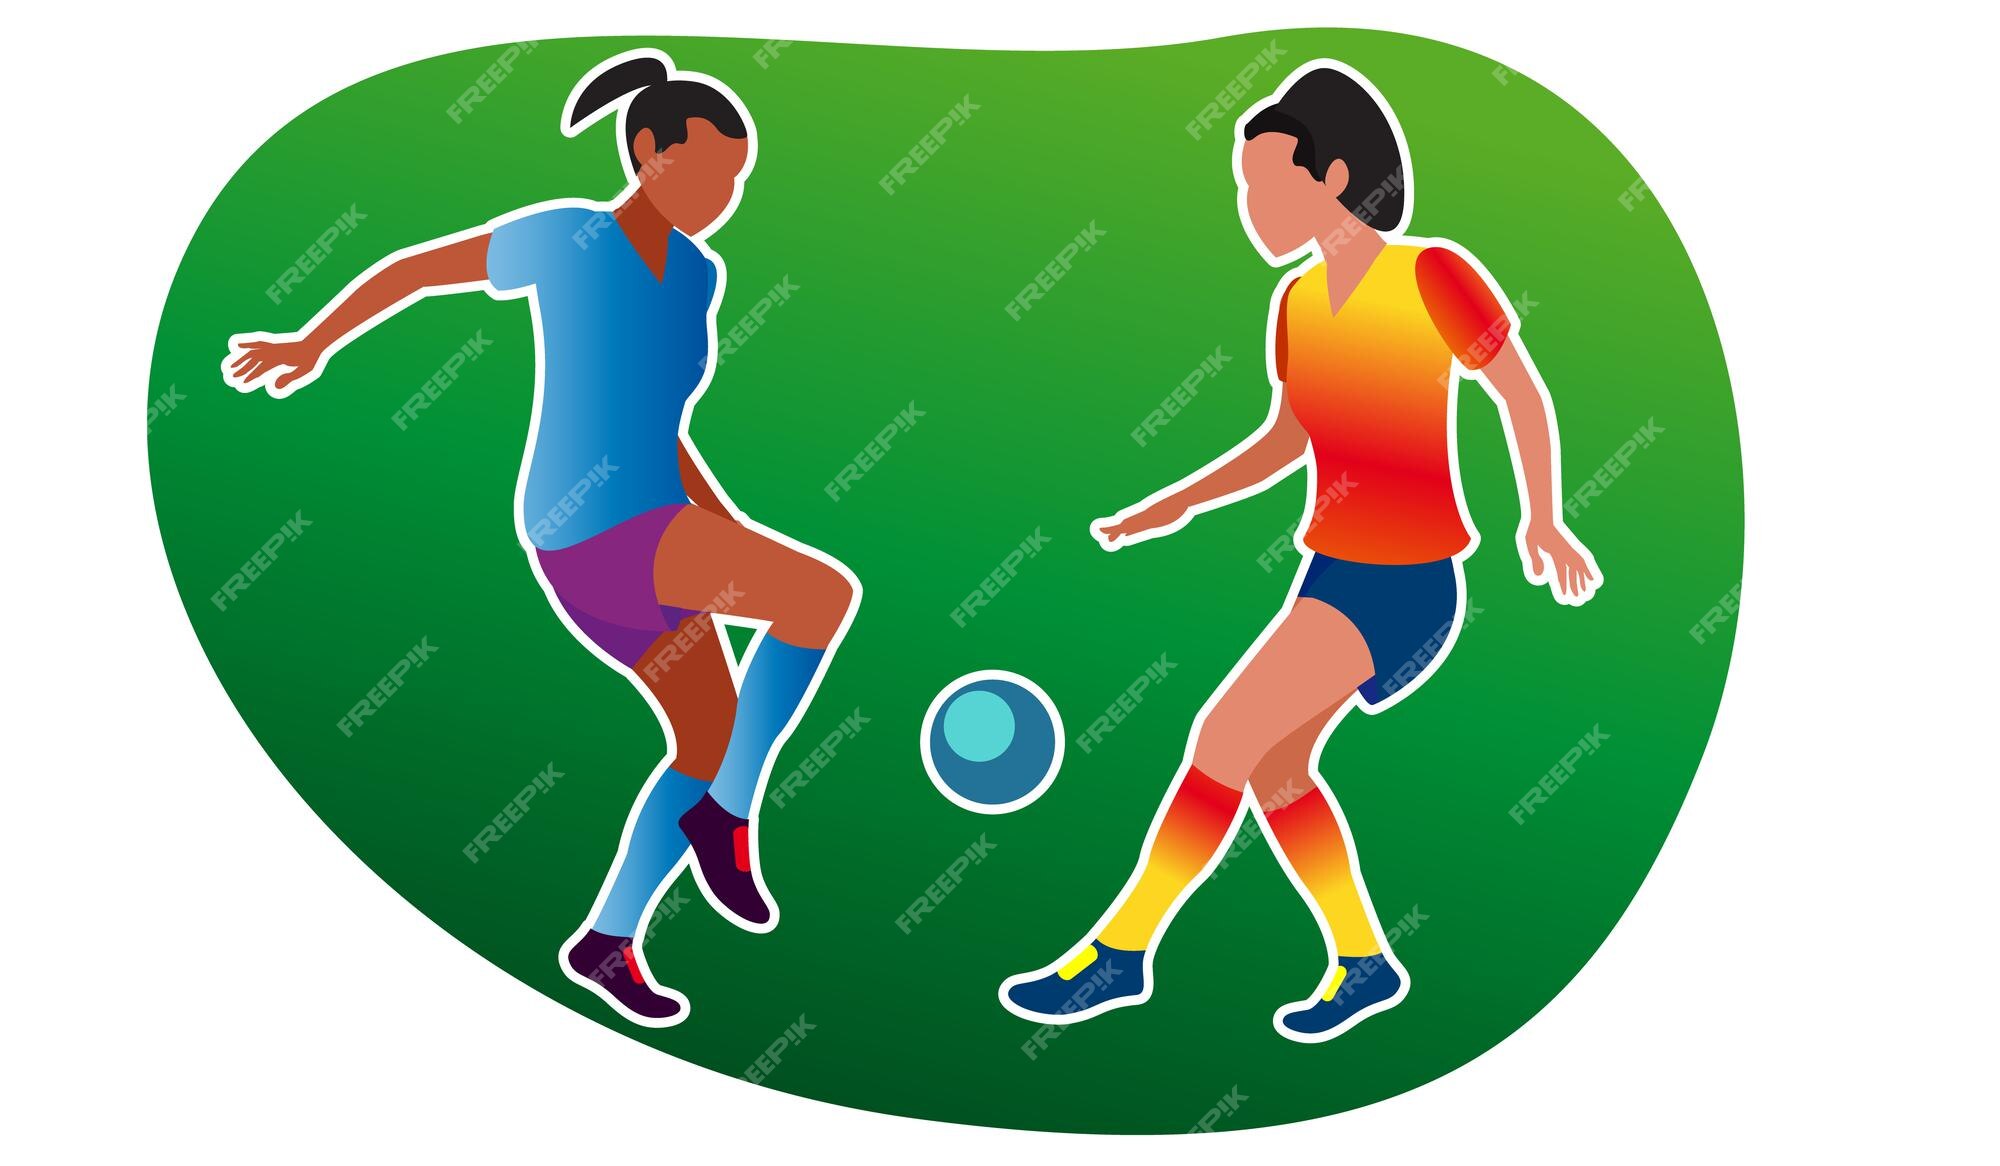 Meninas Adolescentes Que Jogam Futebol Com Uma Bola - Ilustração Vetorial  Stock. Jovens Jogadores No Caráter Liso Dos Desenhos Animados Do Sportswear  - Mulheres Jovens No Jogo Uniforme Do Futebol Da Prática